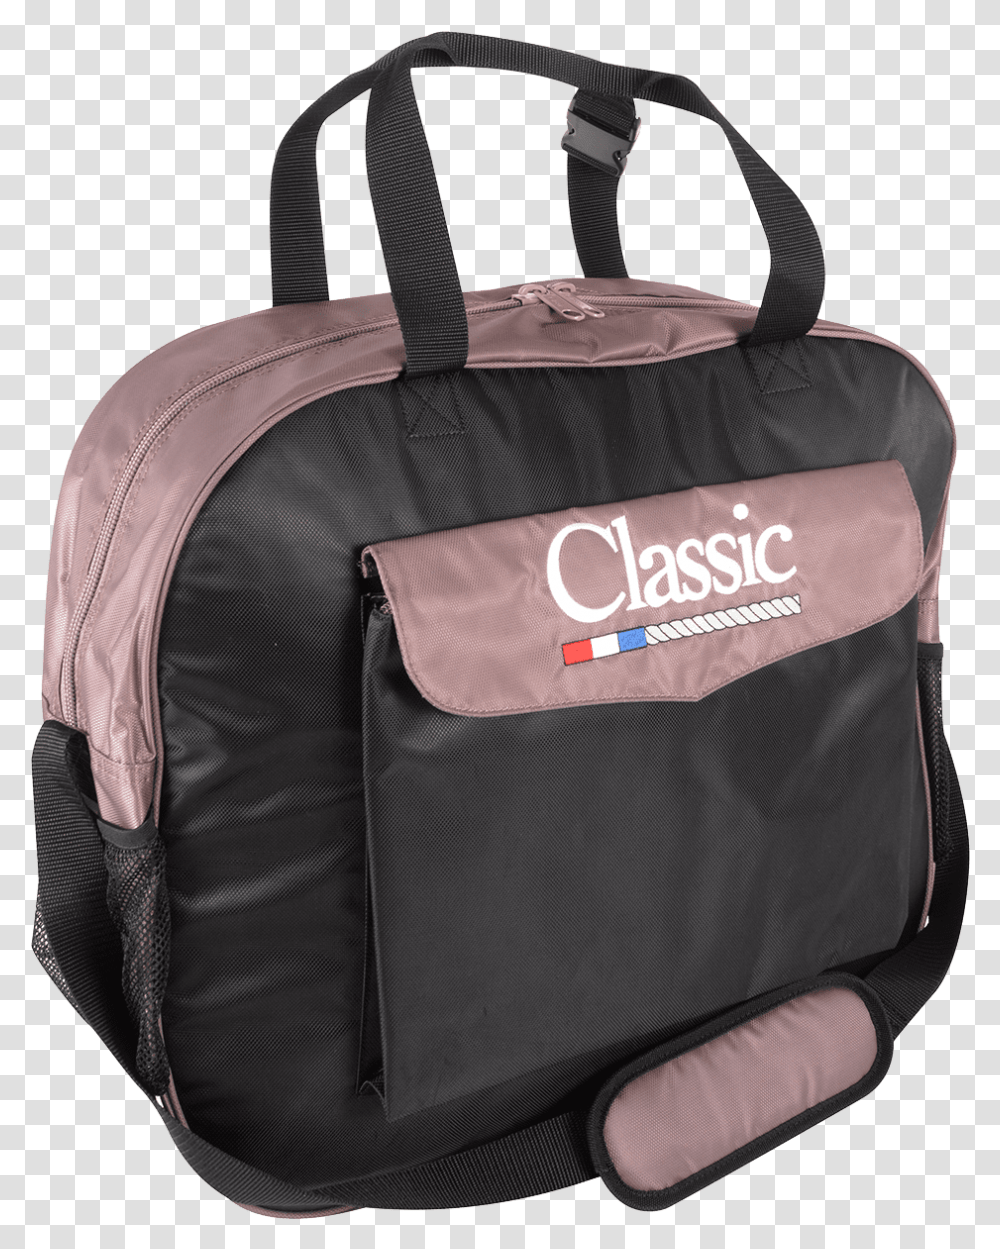 Ropes, Bag, Backpack, Briefcase, Handbag Transparent Png